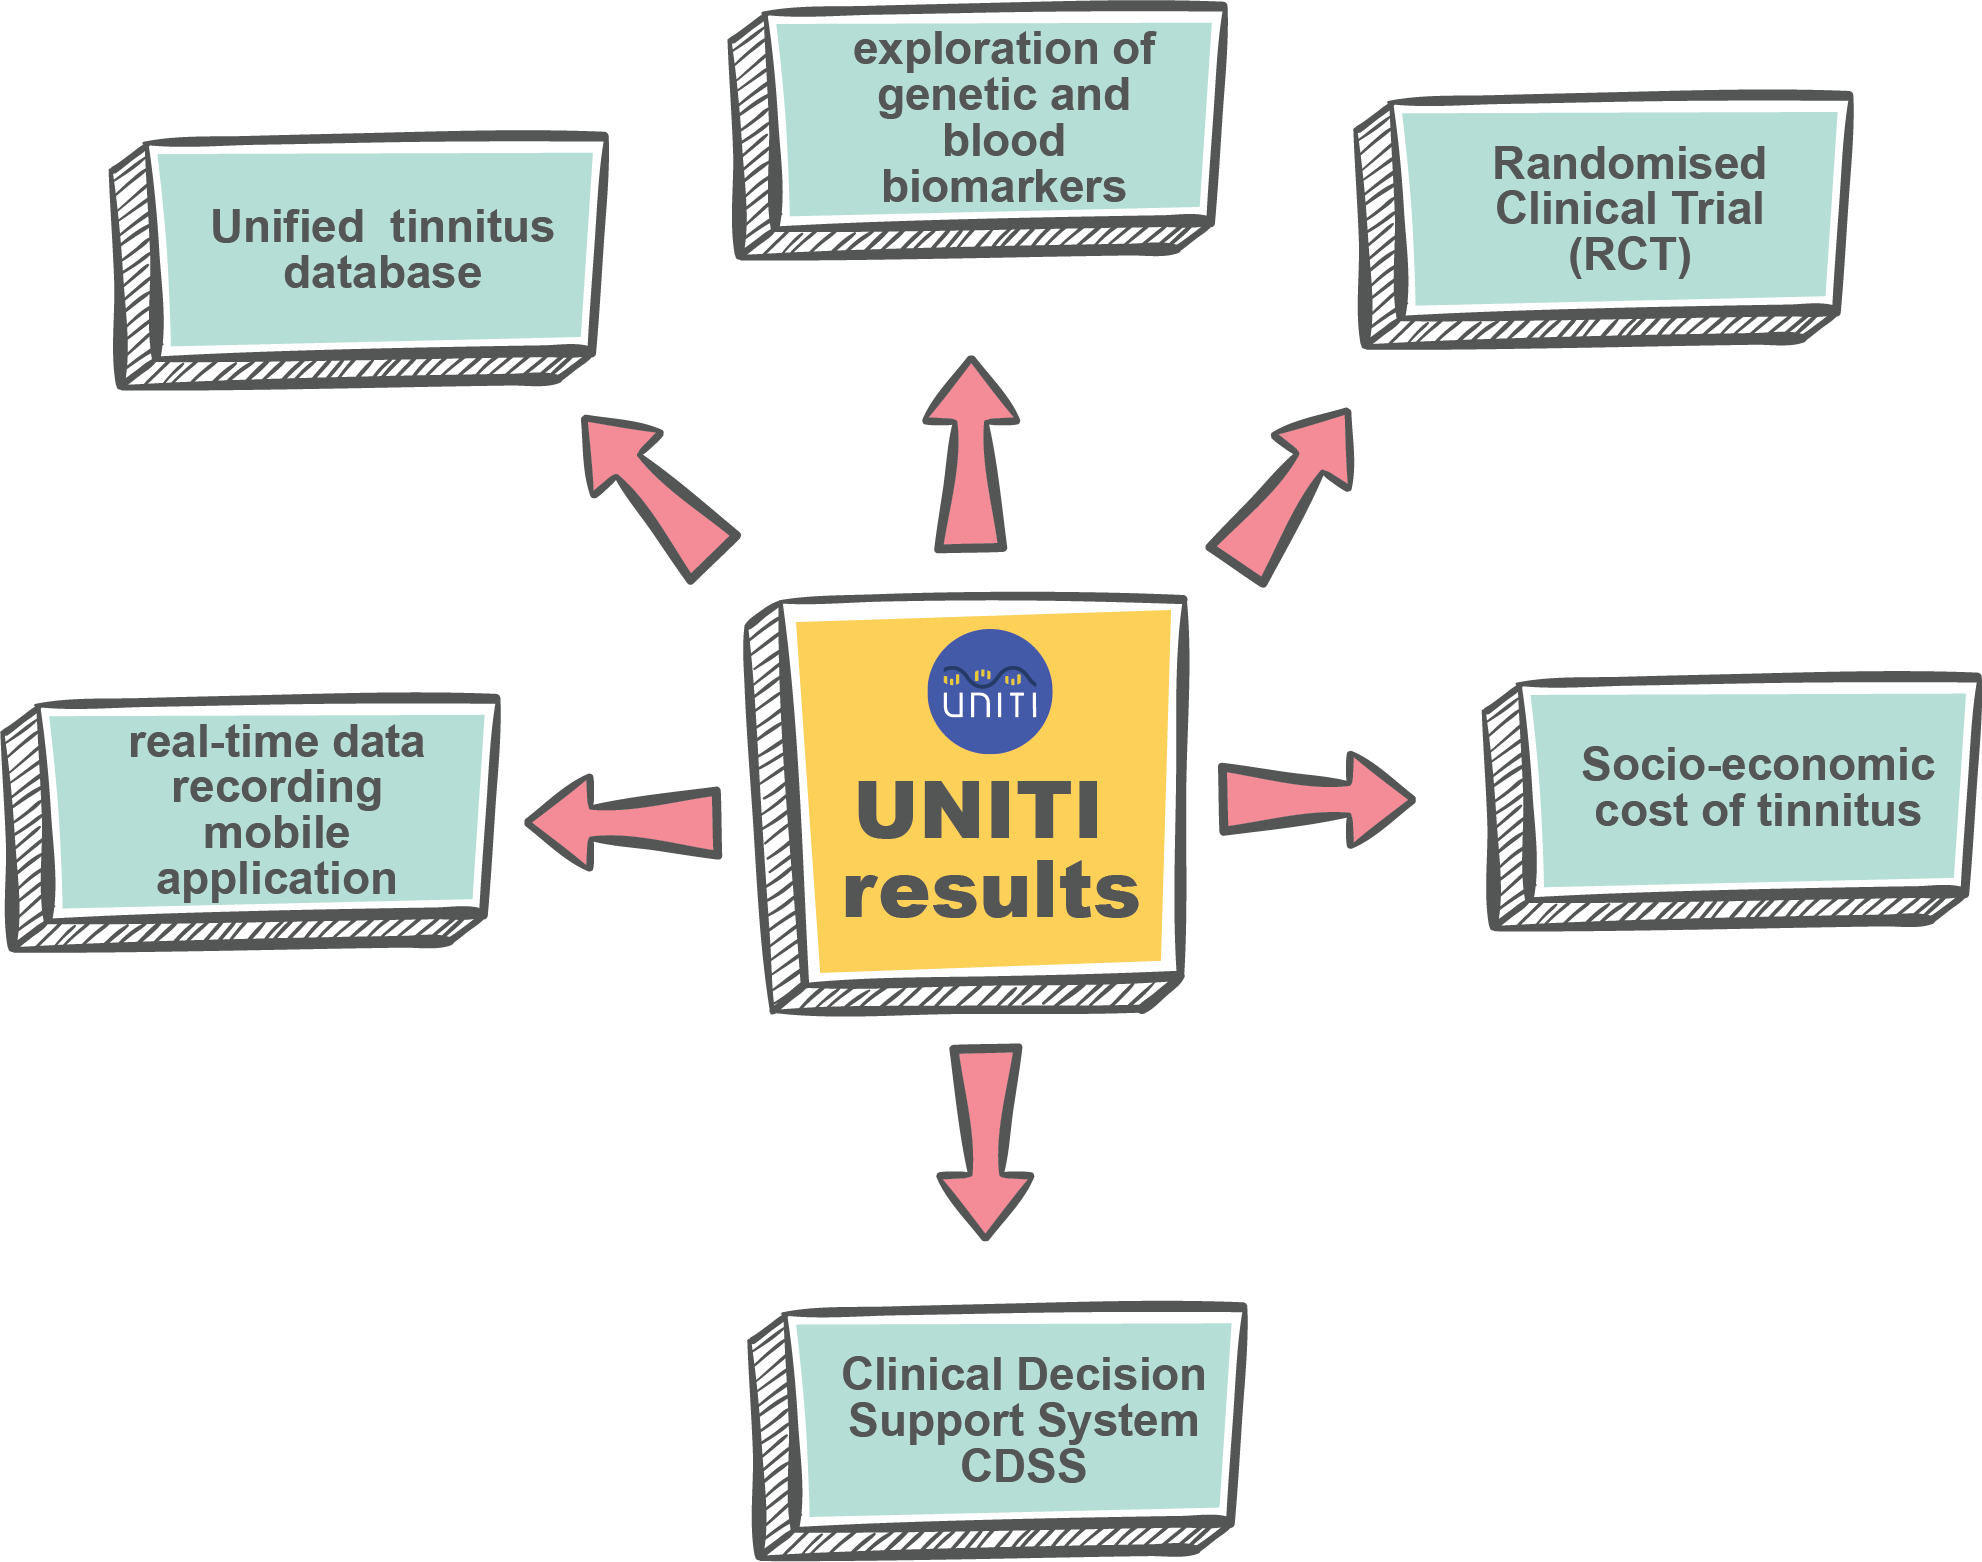 UNITI results 20231201